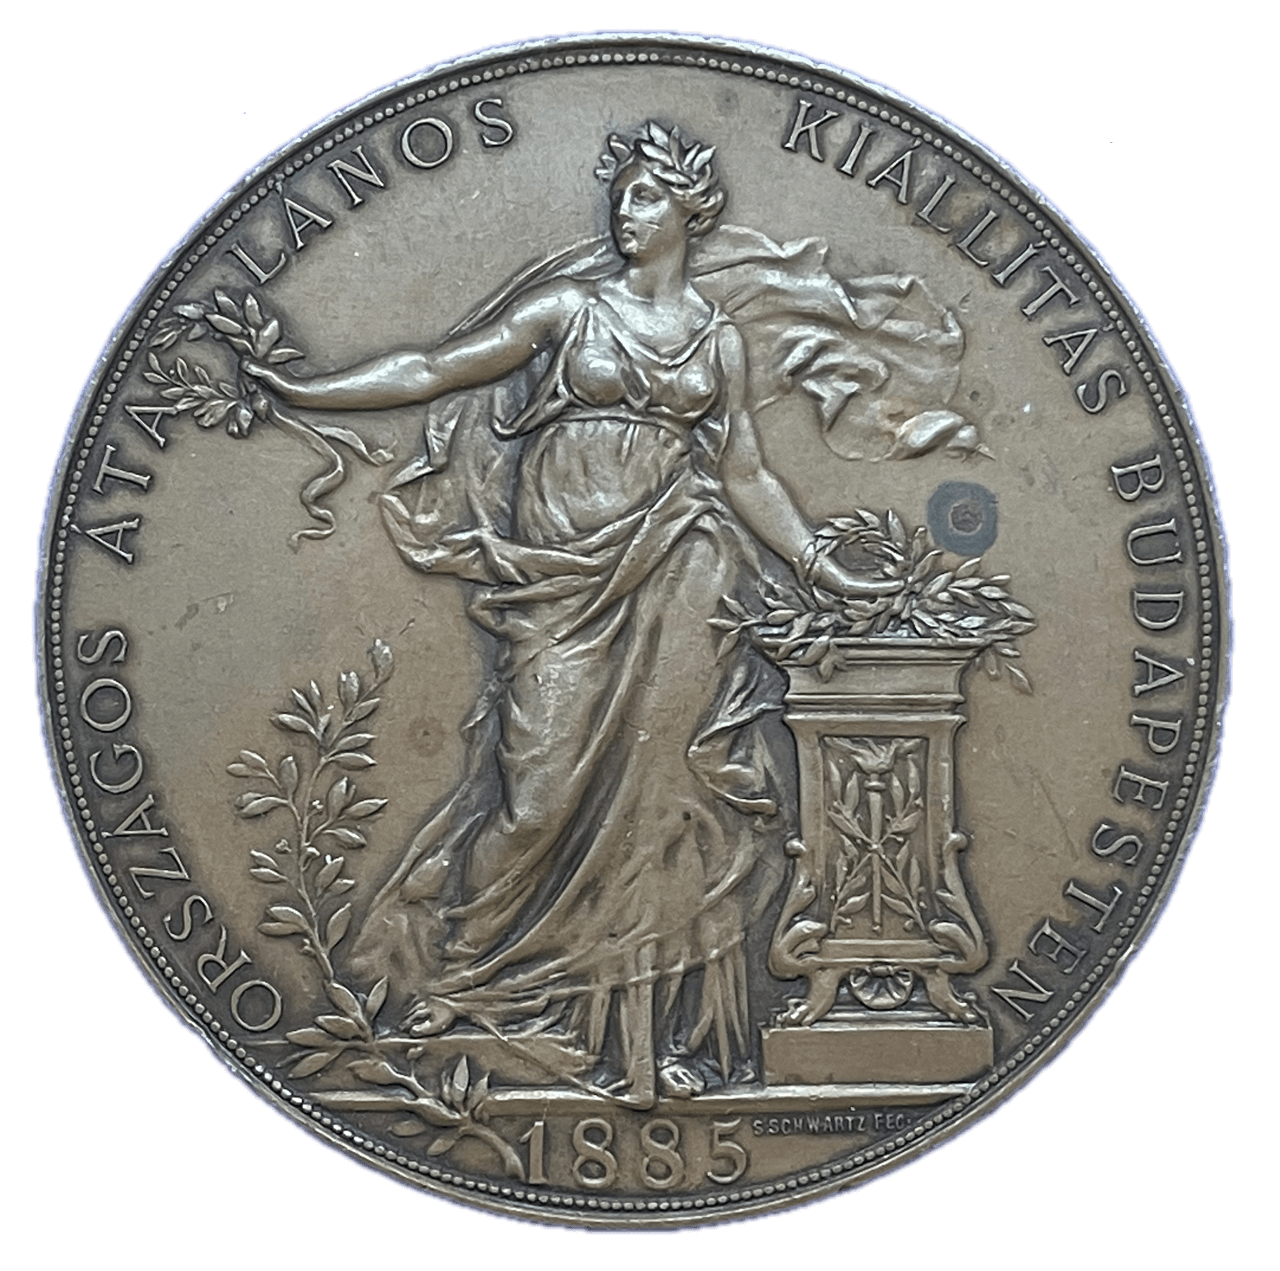 1885 Budapest General Exhibition Historical Medallion by S Schwartz